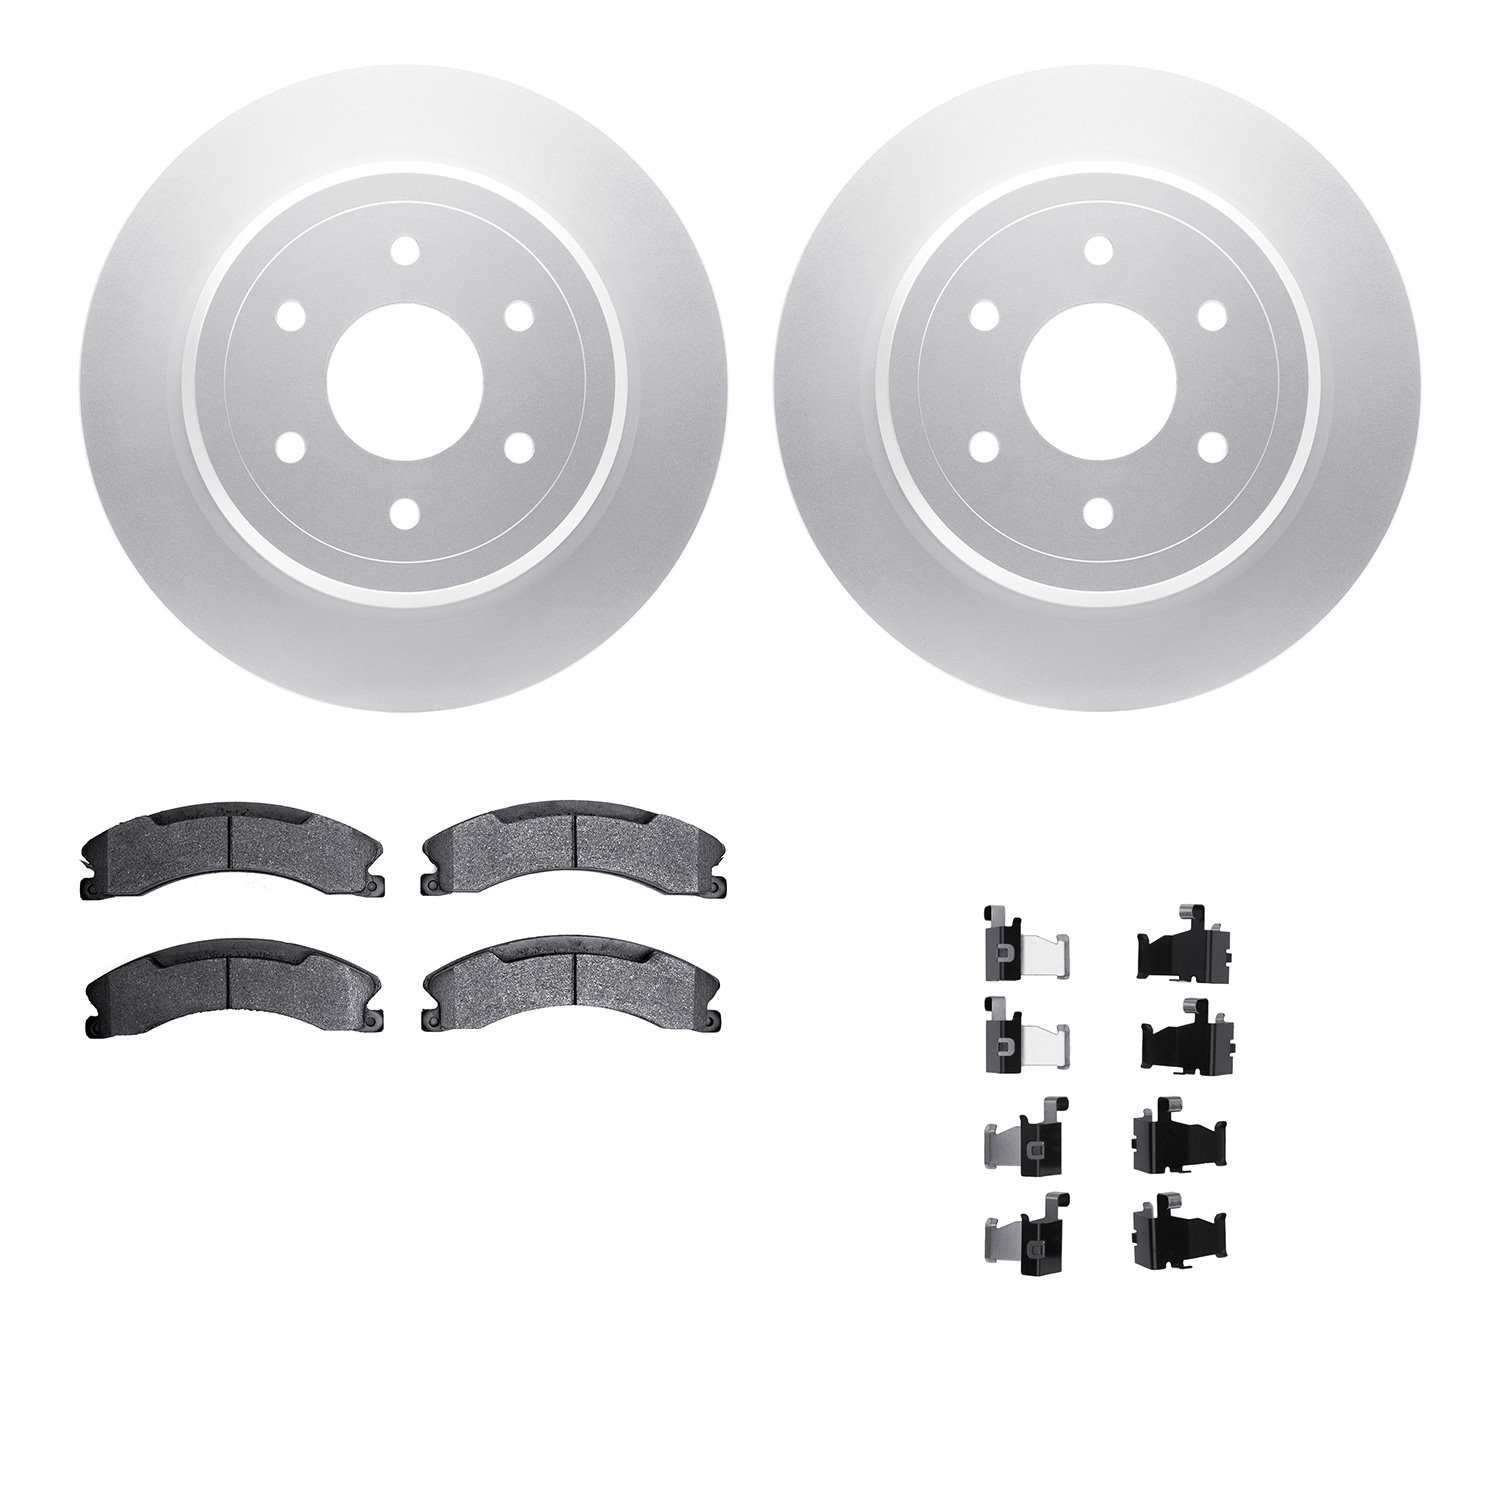 4212-67006 Geospec Brake Rotors w/Heavy-Duty Brake Pads & Hardware, Fits Select Infiniti/Nissan, Position: Rear